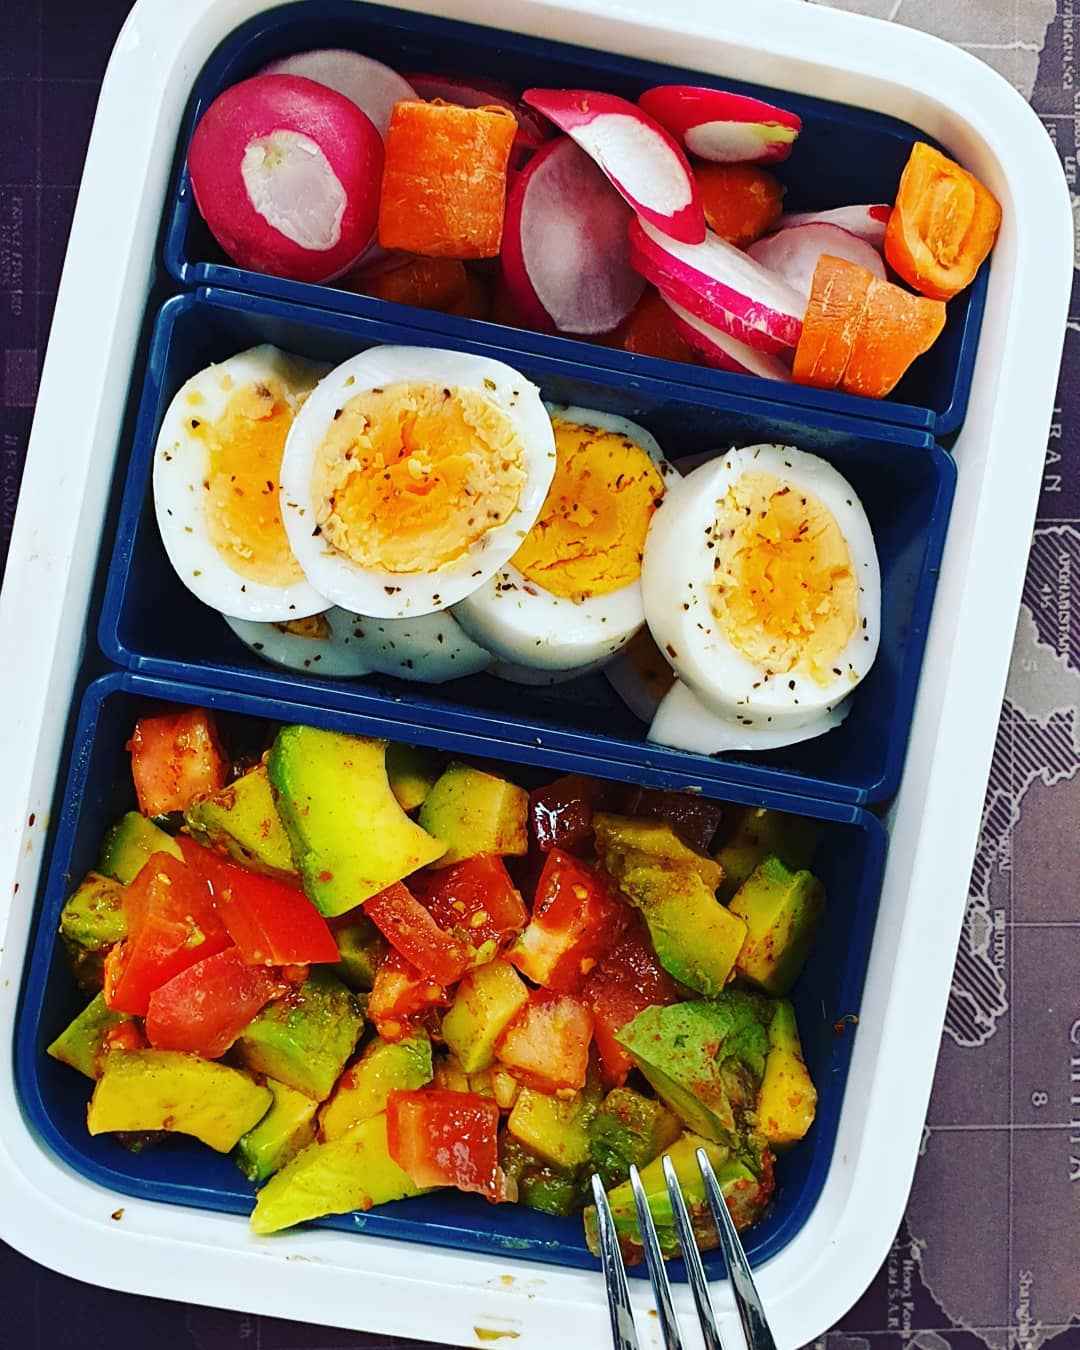 Wieder selfmade #lunch #avocado #tomatos #eggs #radischen #eier #chili #karotten #mittagessen #foodblogger #austrianinstagram #austrianblogger ????️?